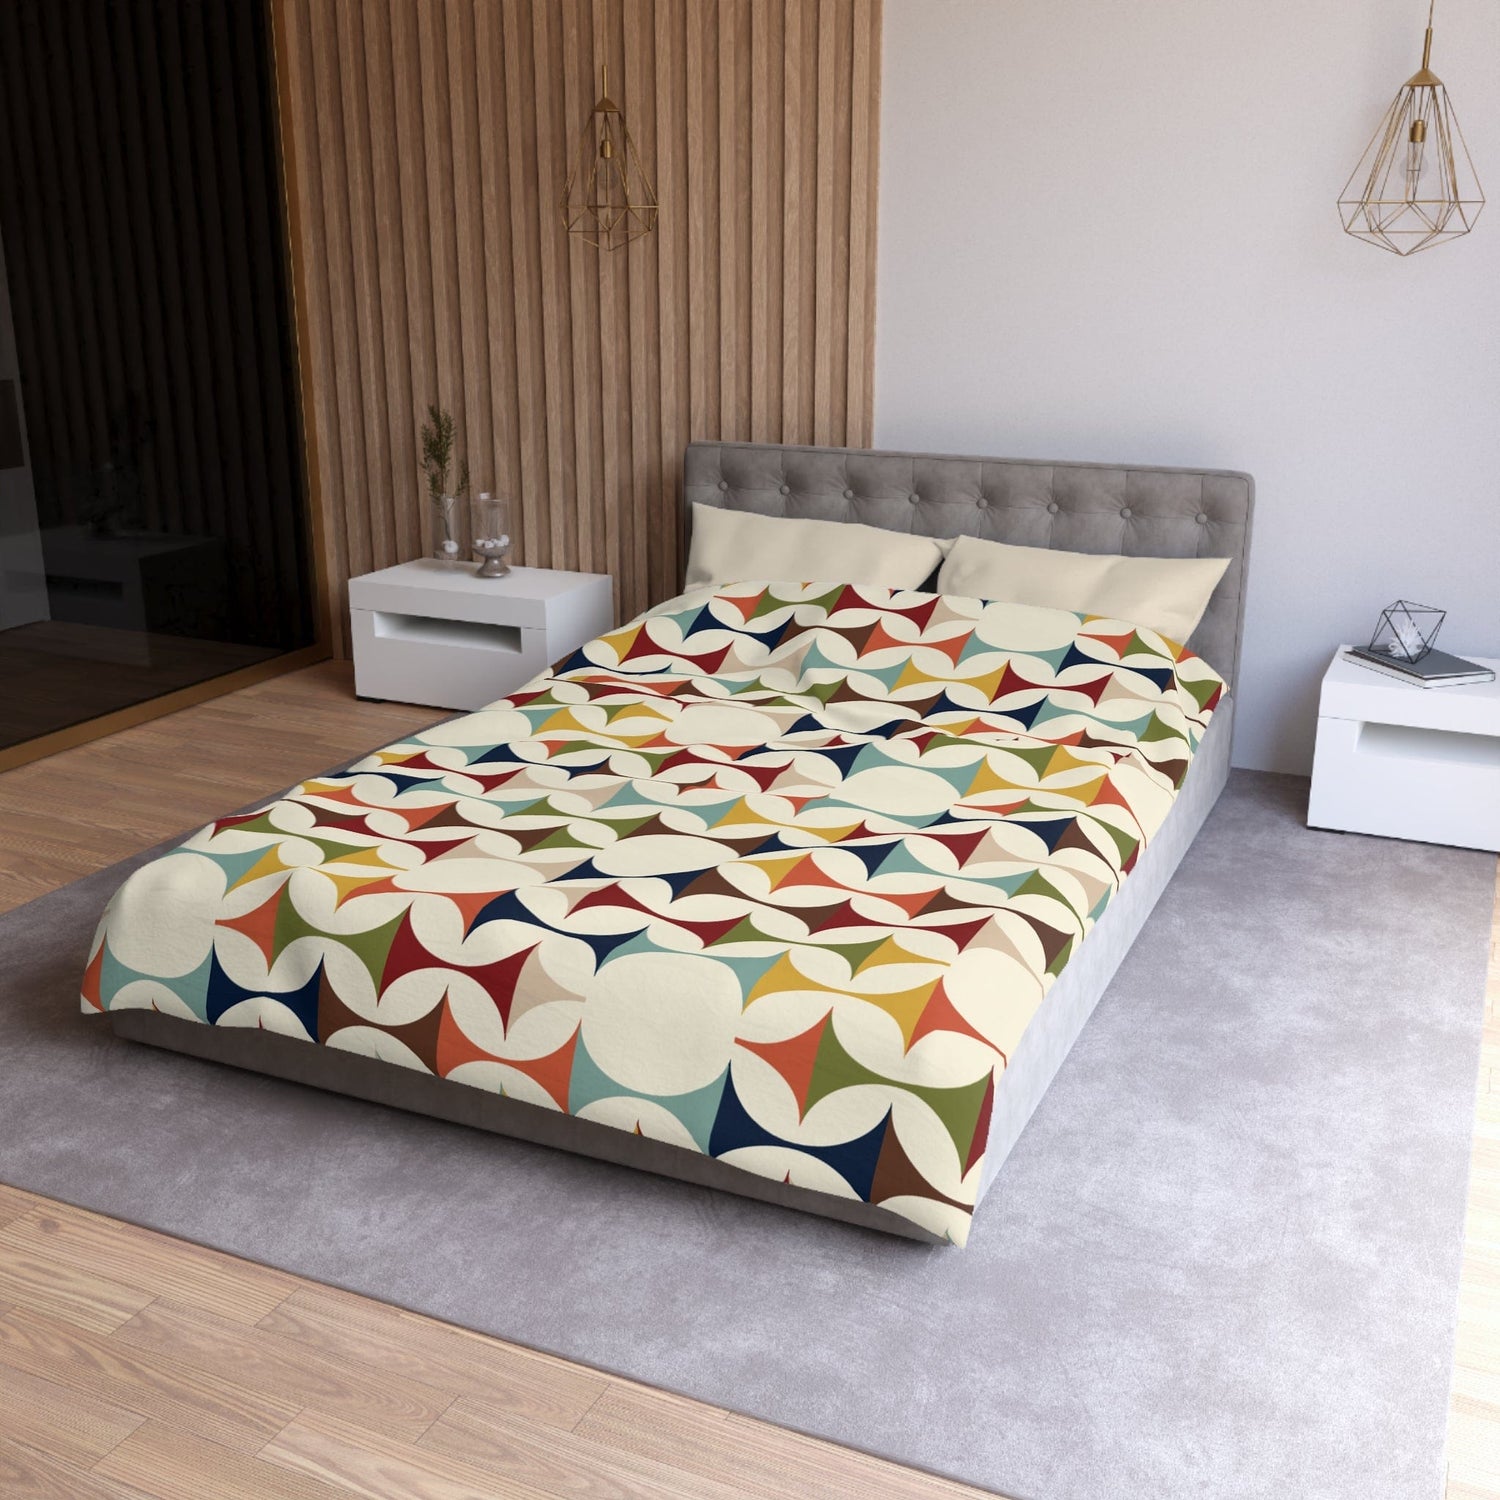 Kate McEnroe New York Retro MCM Duvet Cover, Mid Century Modern Bedding, Vibrant Geometric Scandinavian Modern Danish Bed DecorDuvet Covers36267608590040283305